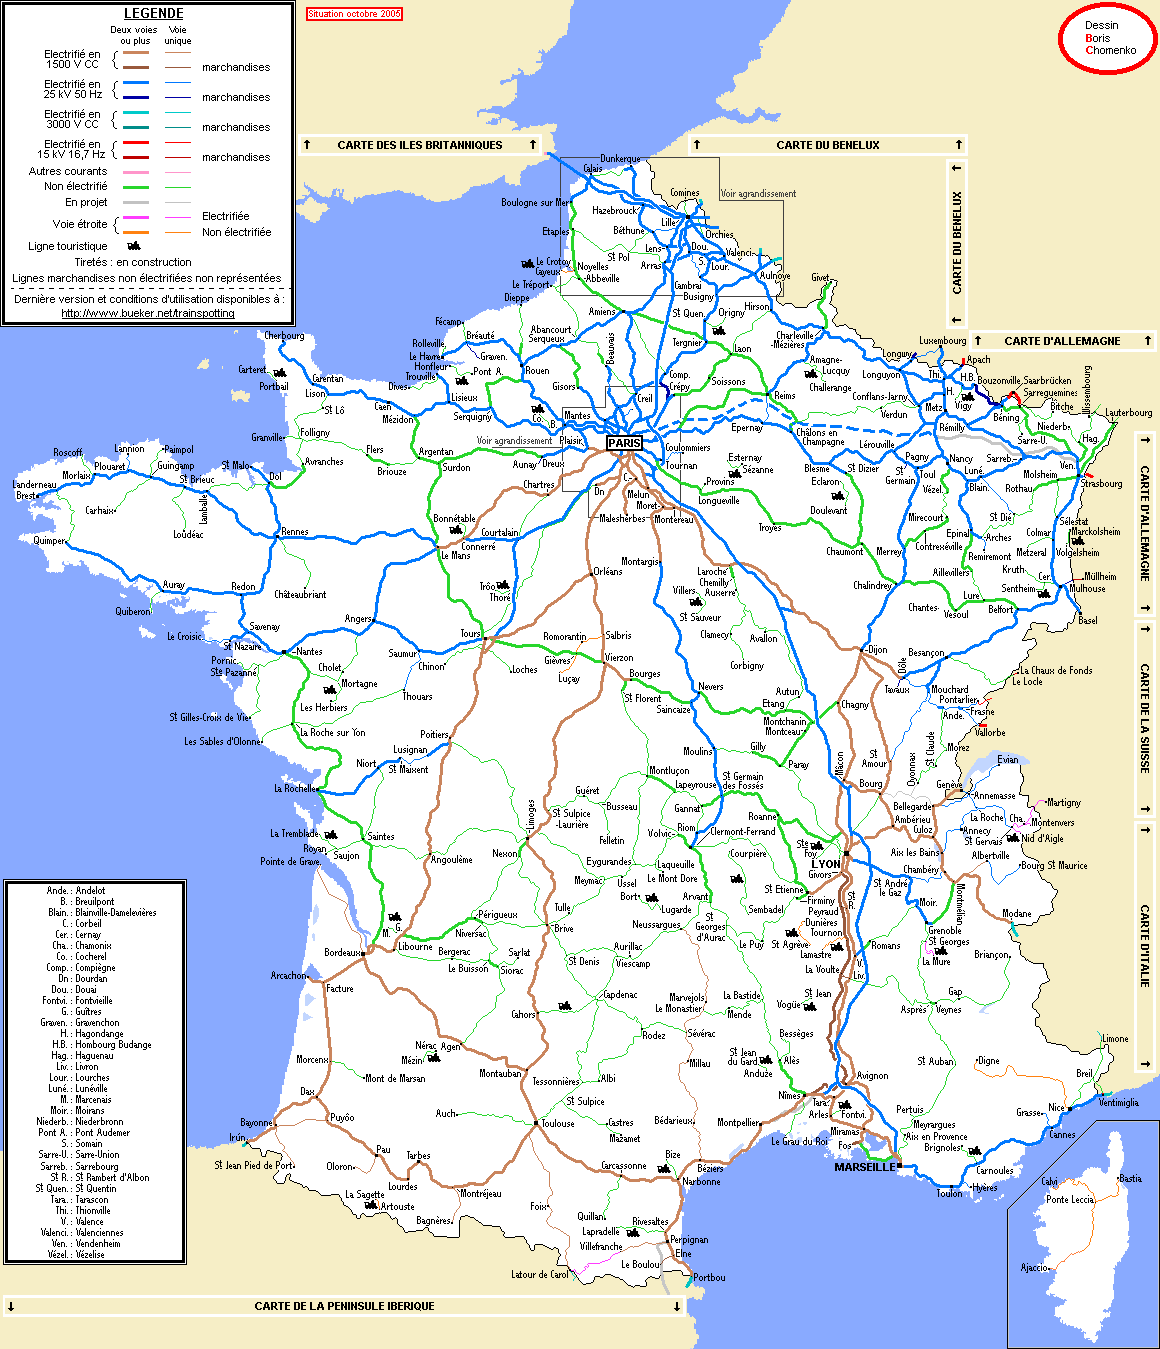 Chronologie | Le monde des chemins de fer | FANDOM powered by Wikia